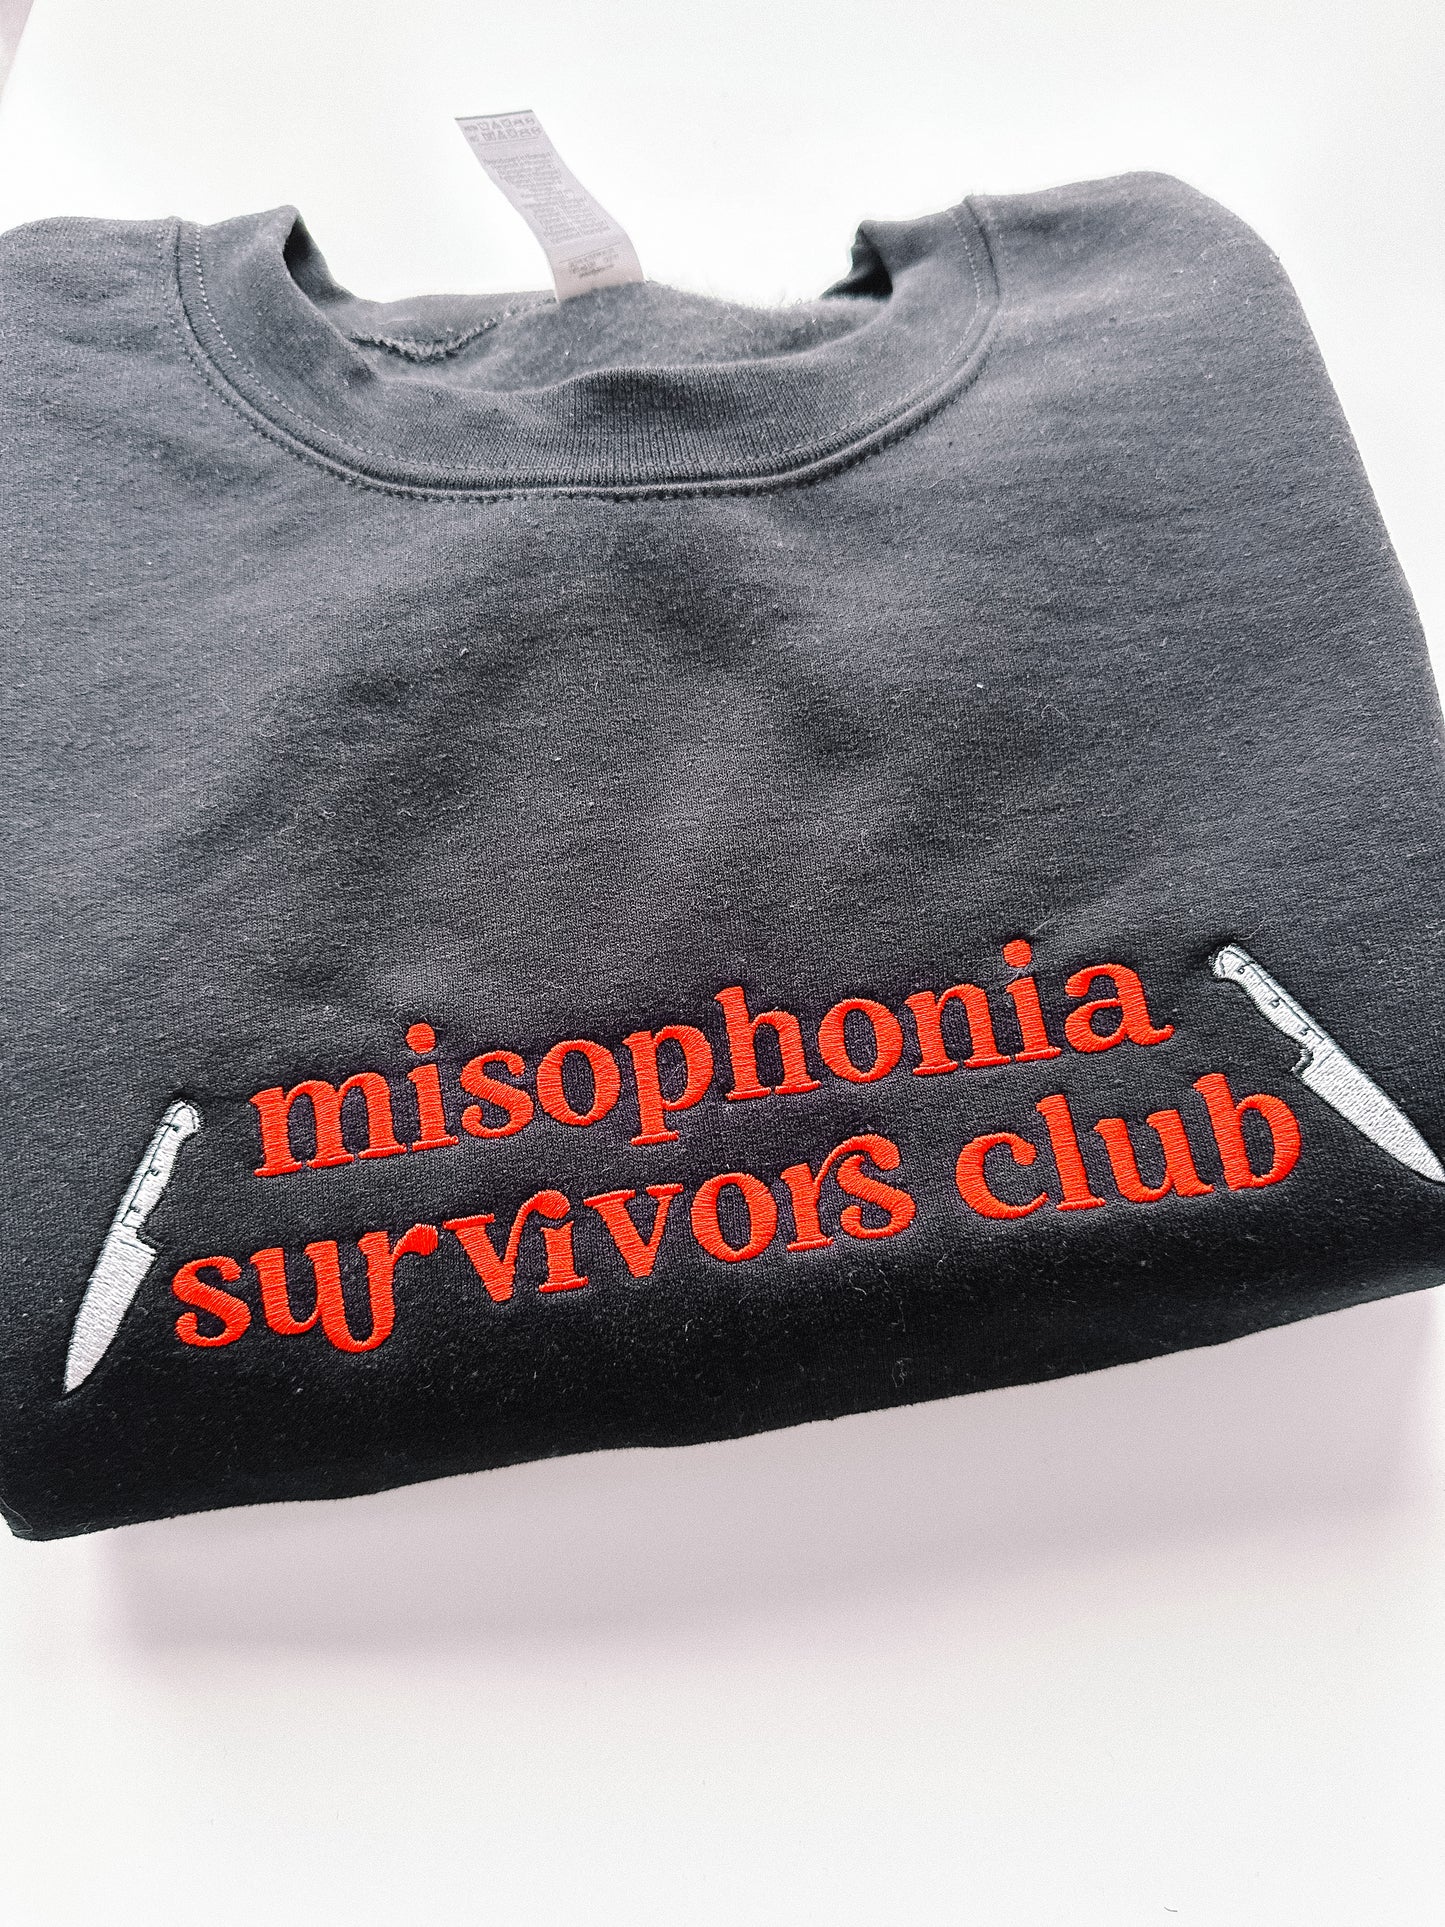 Misophonia Survivor's Club crewneck